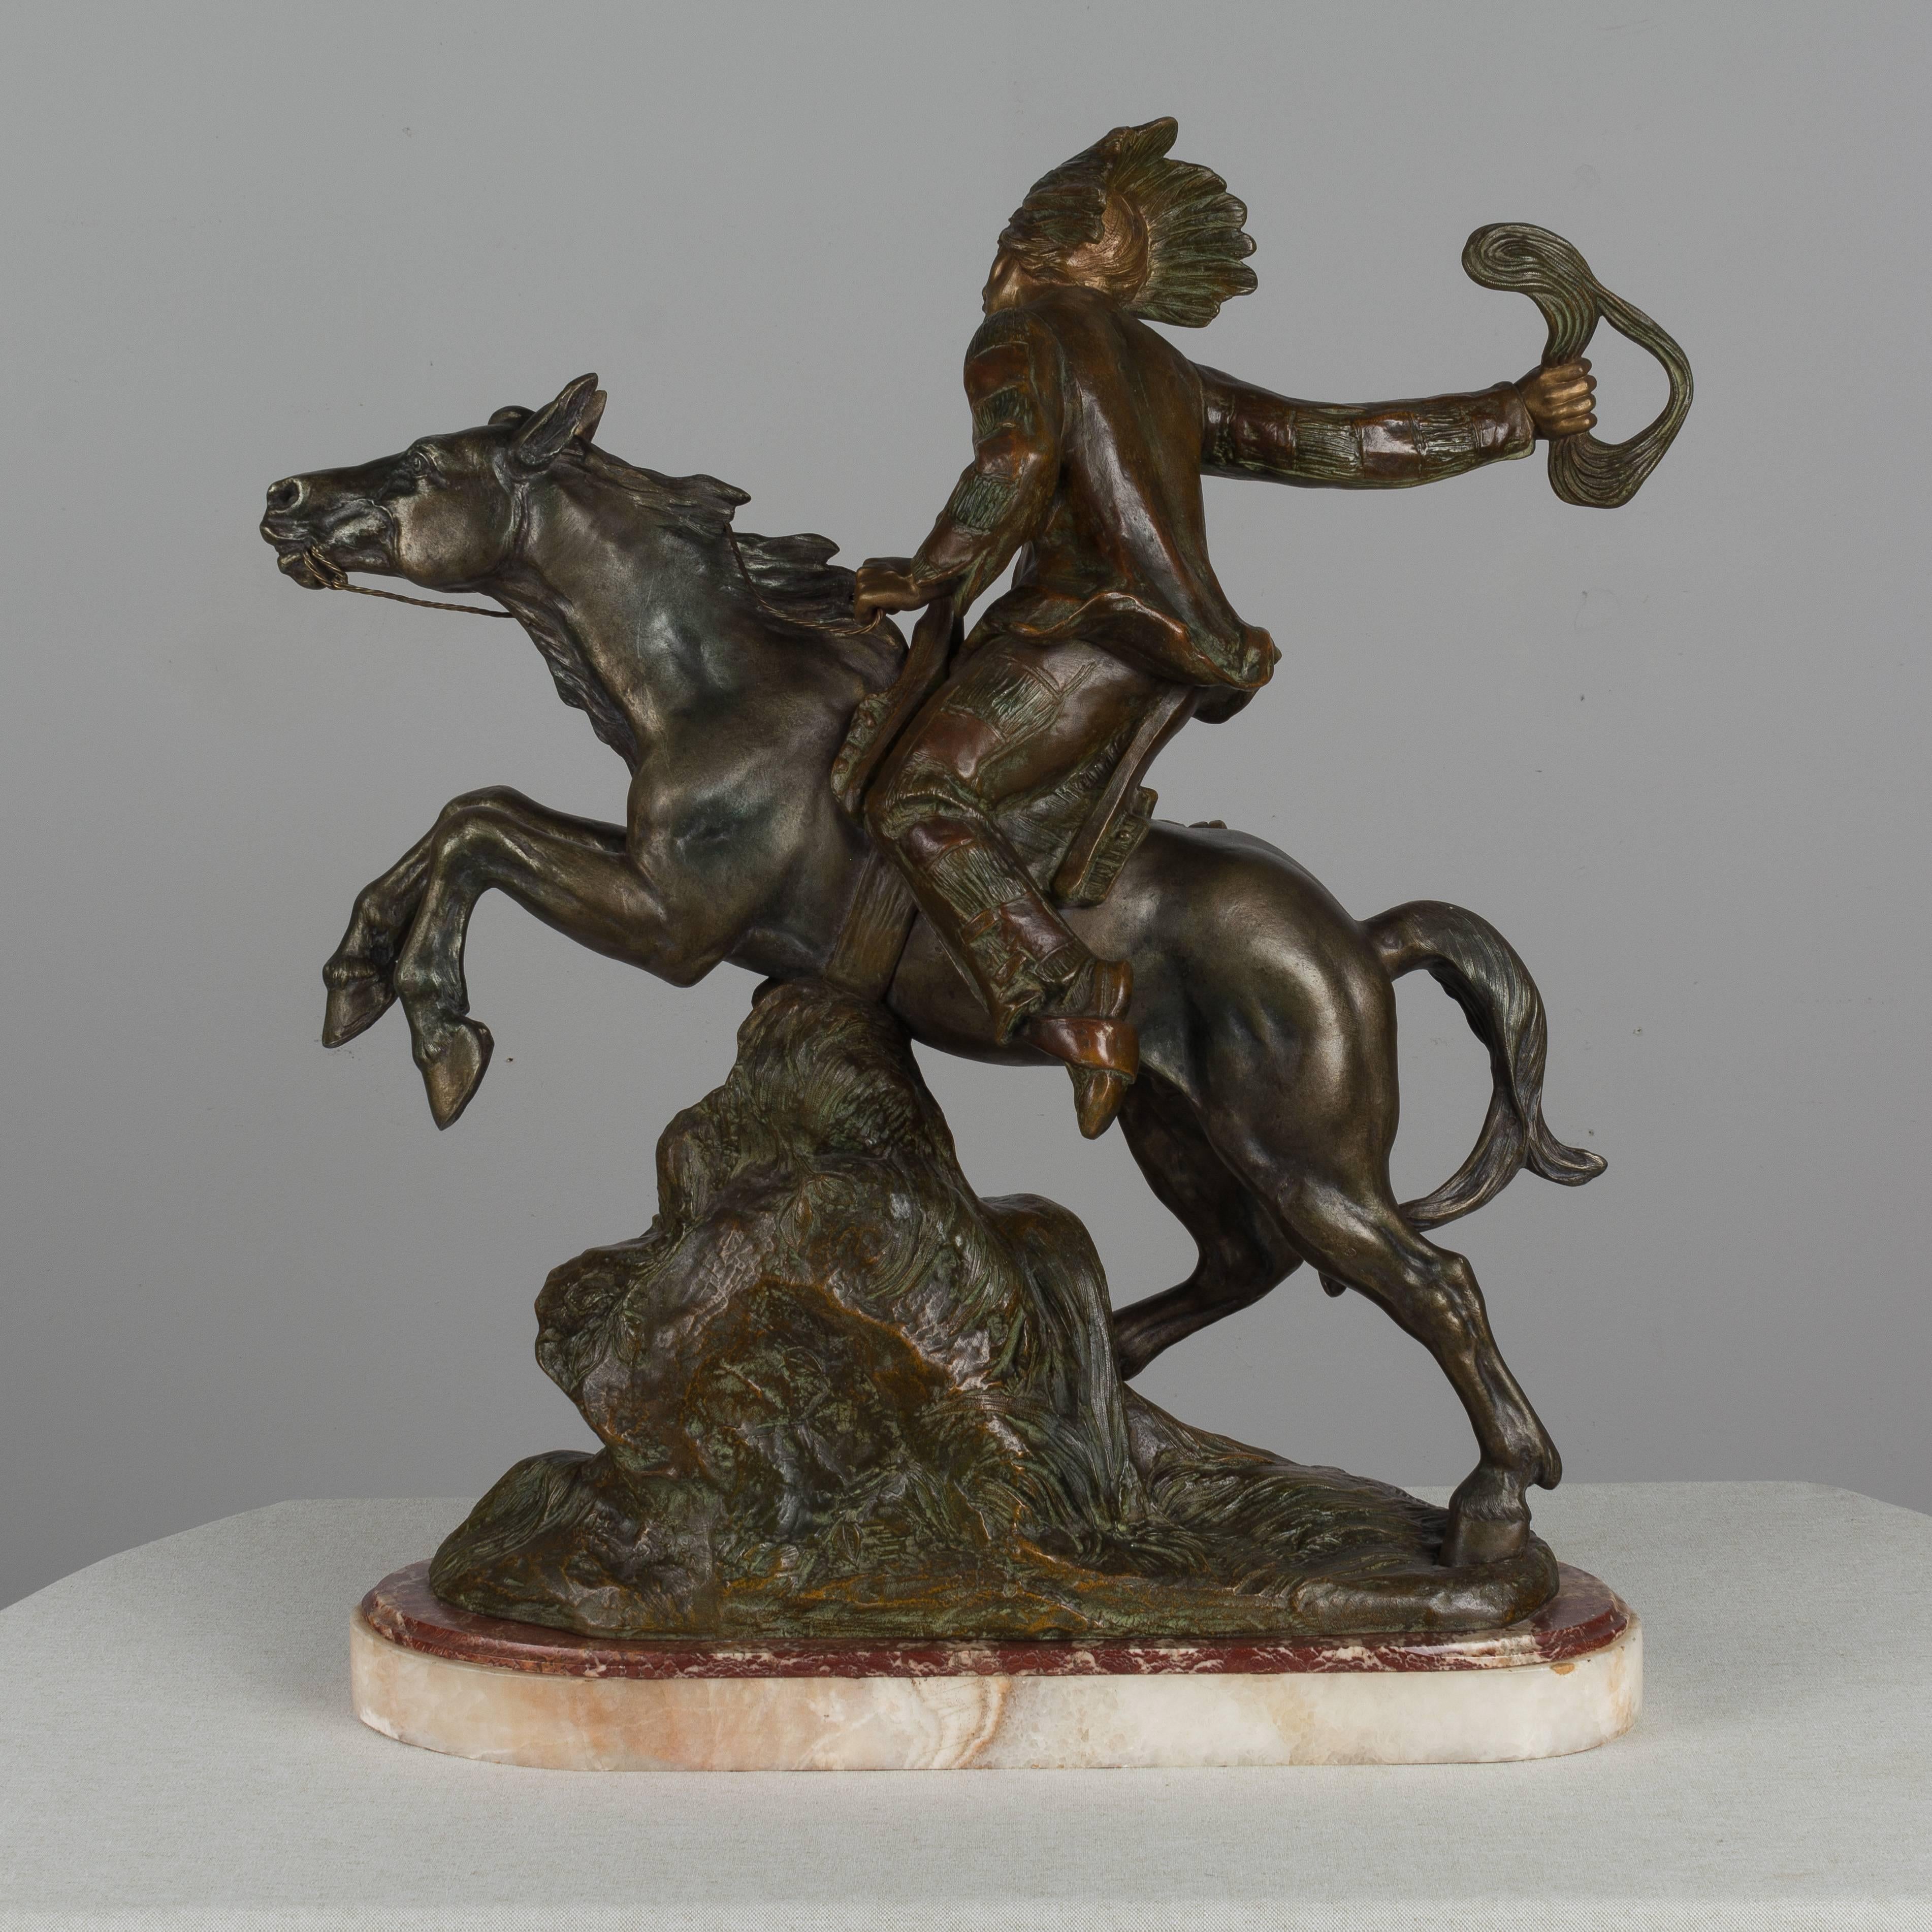 Eine große Metallskulptur eines Indianers, der auf einem galoppierenden Pferd reitet. Der Titel lautet 